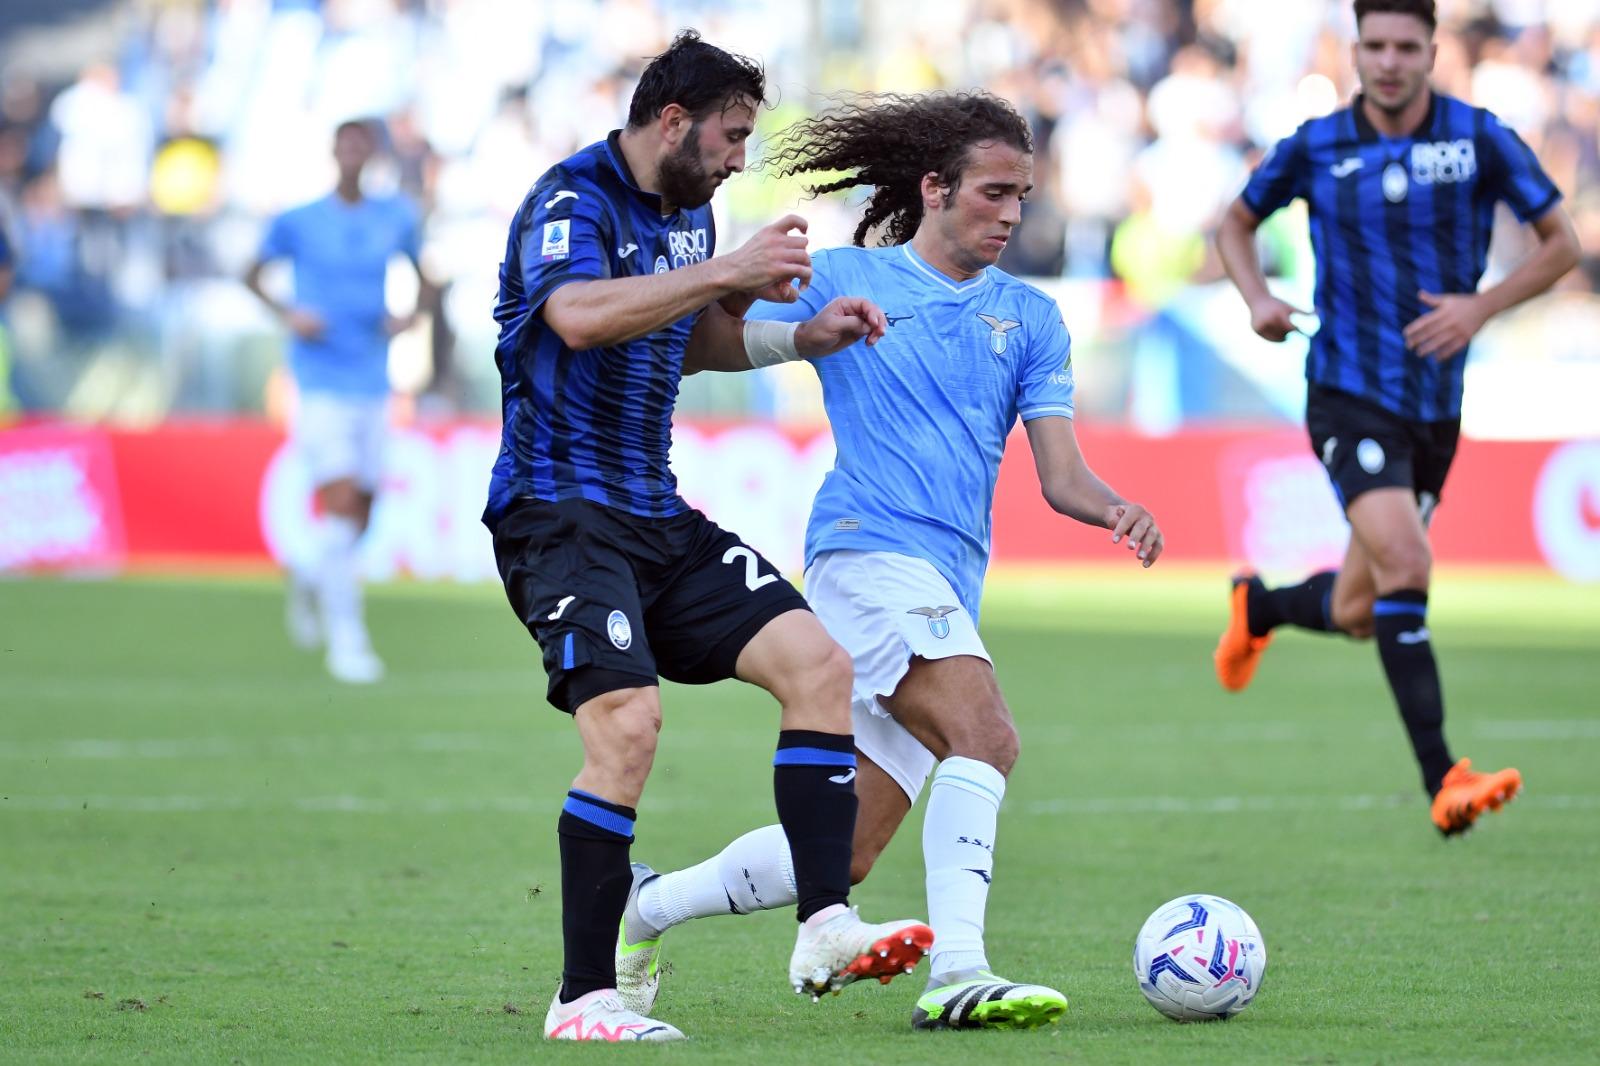 L’Atalanta passeggia su una Lazio inconsistente: a Bergamo è 3-1 e scontro diretto a favore della Dea